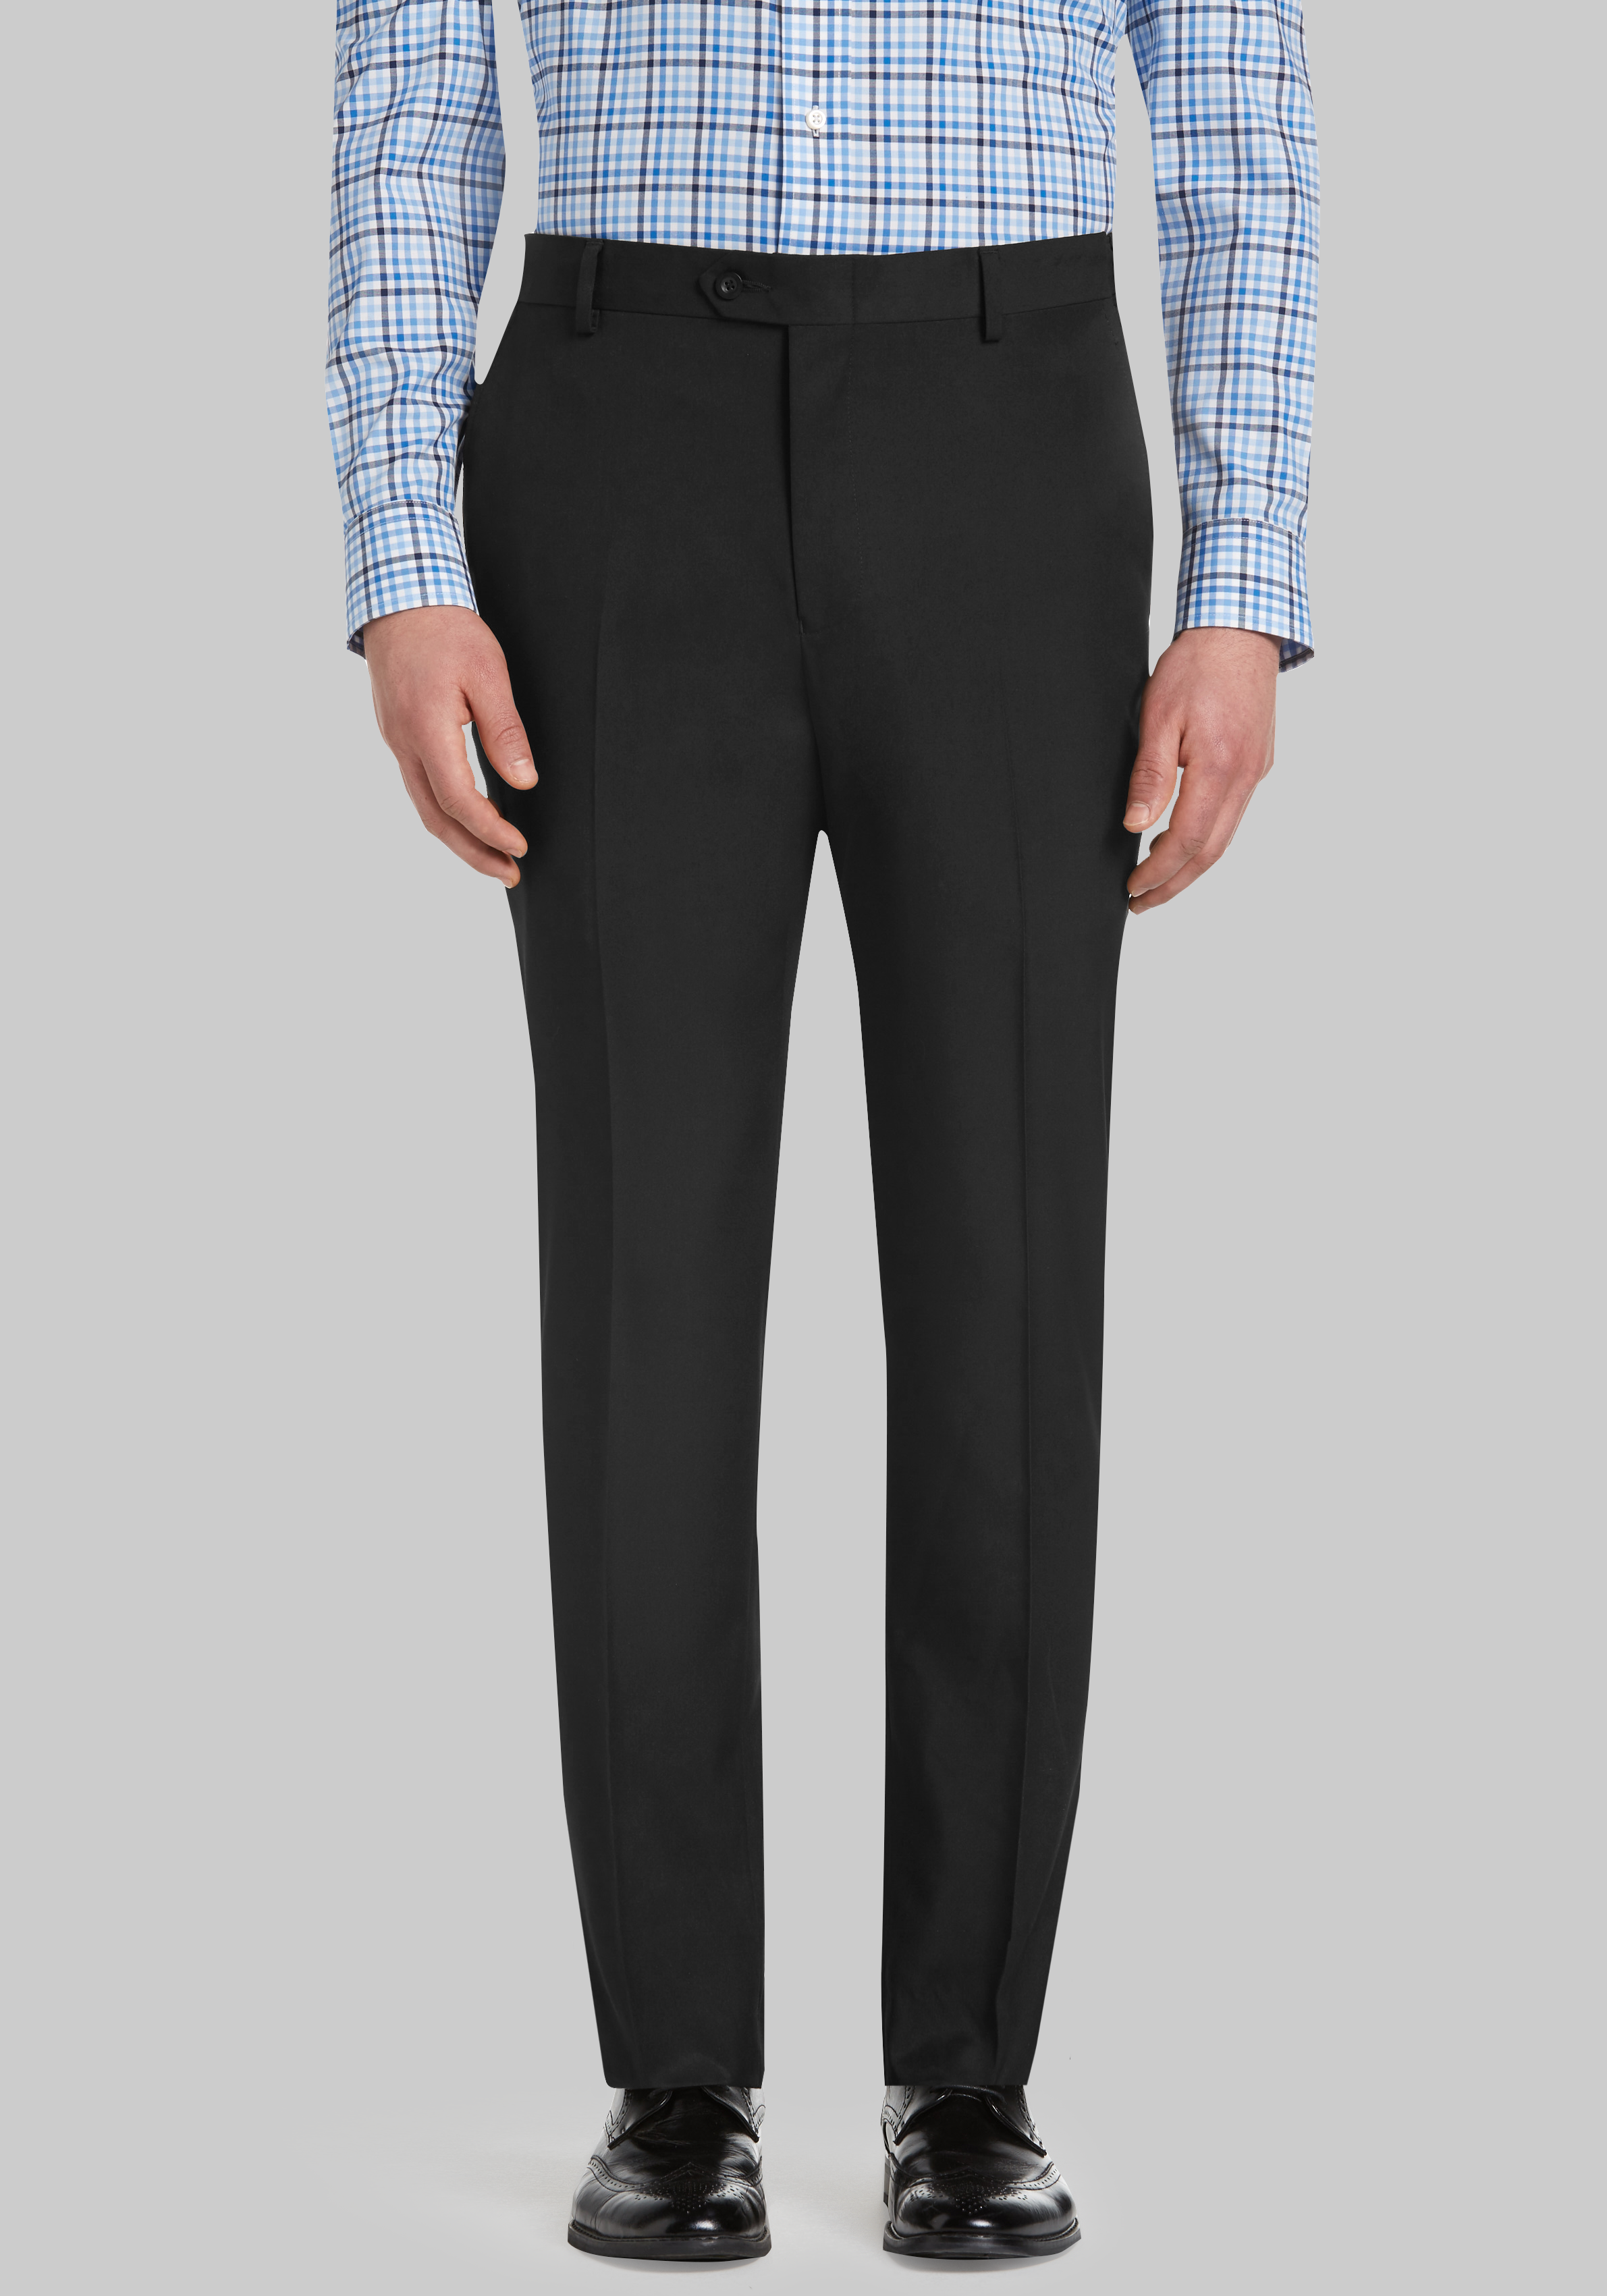 Men's Black Formal Trousers, Slim & Regular Fit